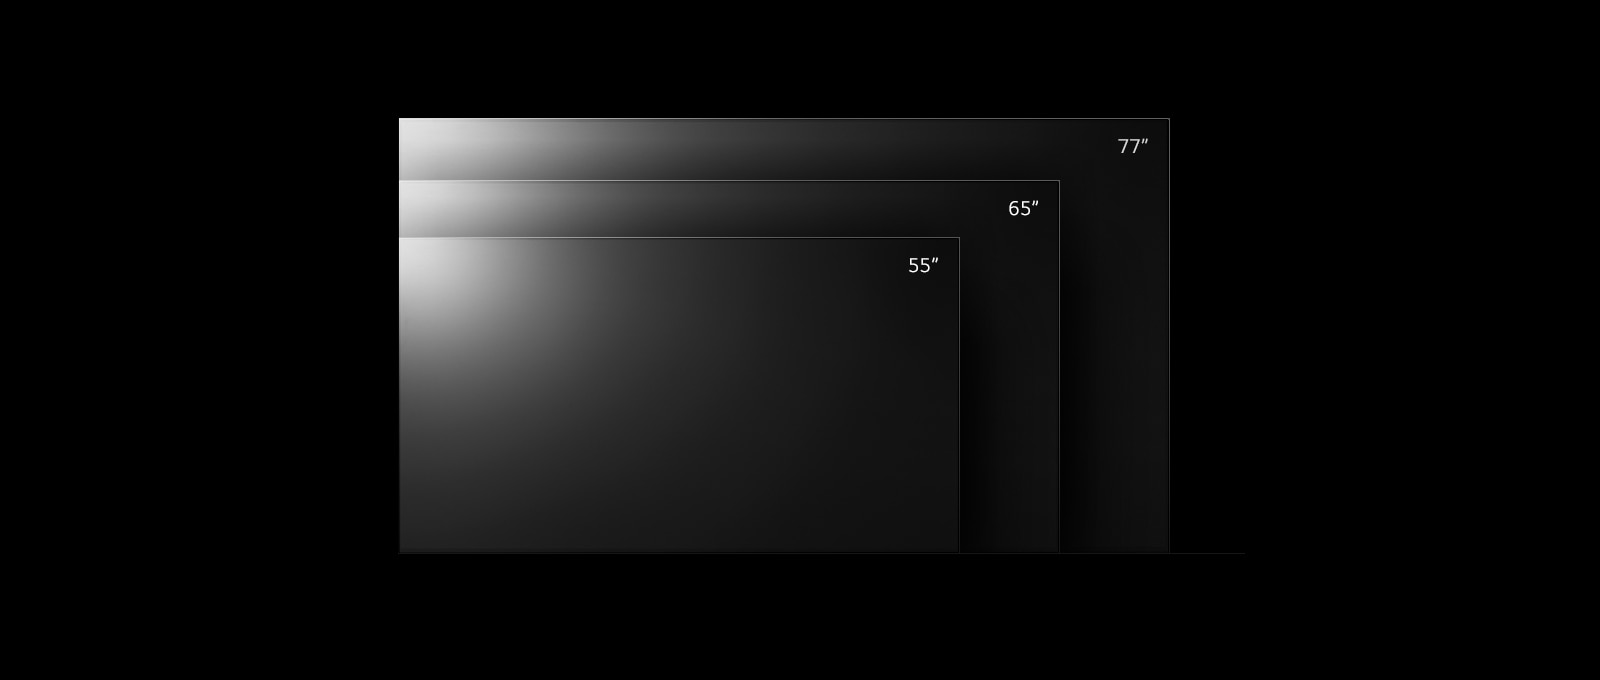 تتضمن تشكيلة تلفزيونات OLED G2 من إل جي أحجام مختلفة بداية من 55 بوصة إلى 77 بوصة